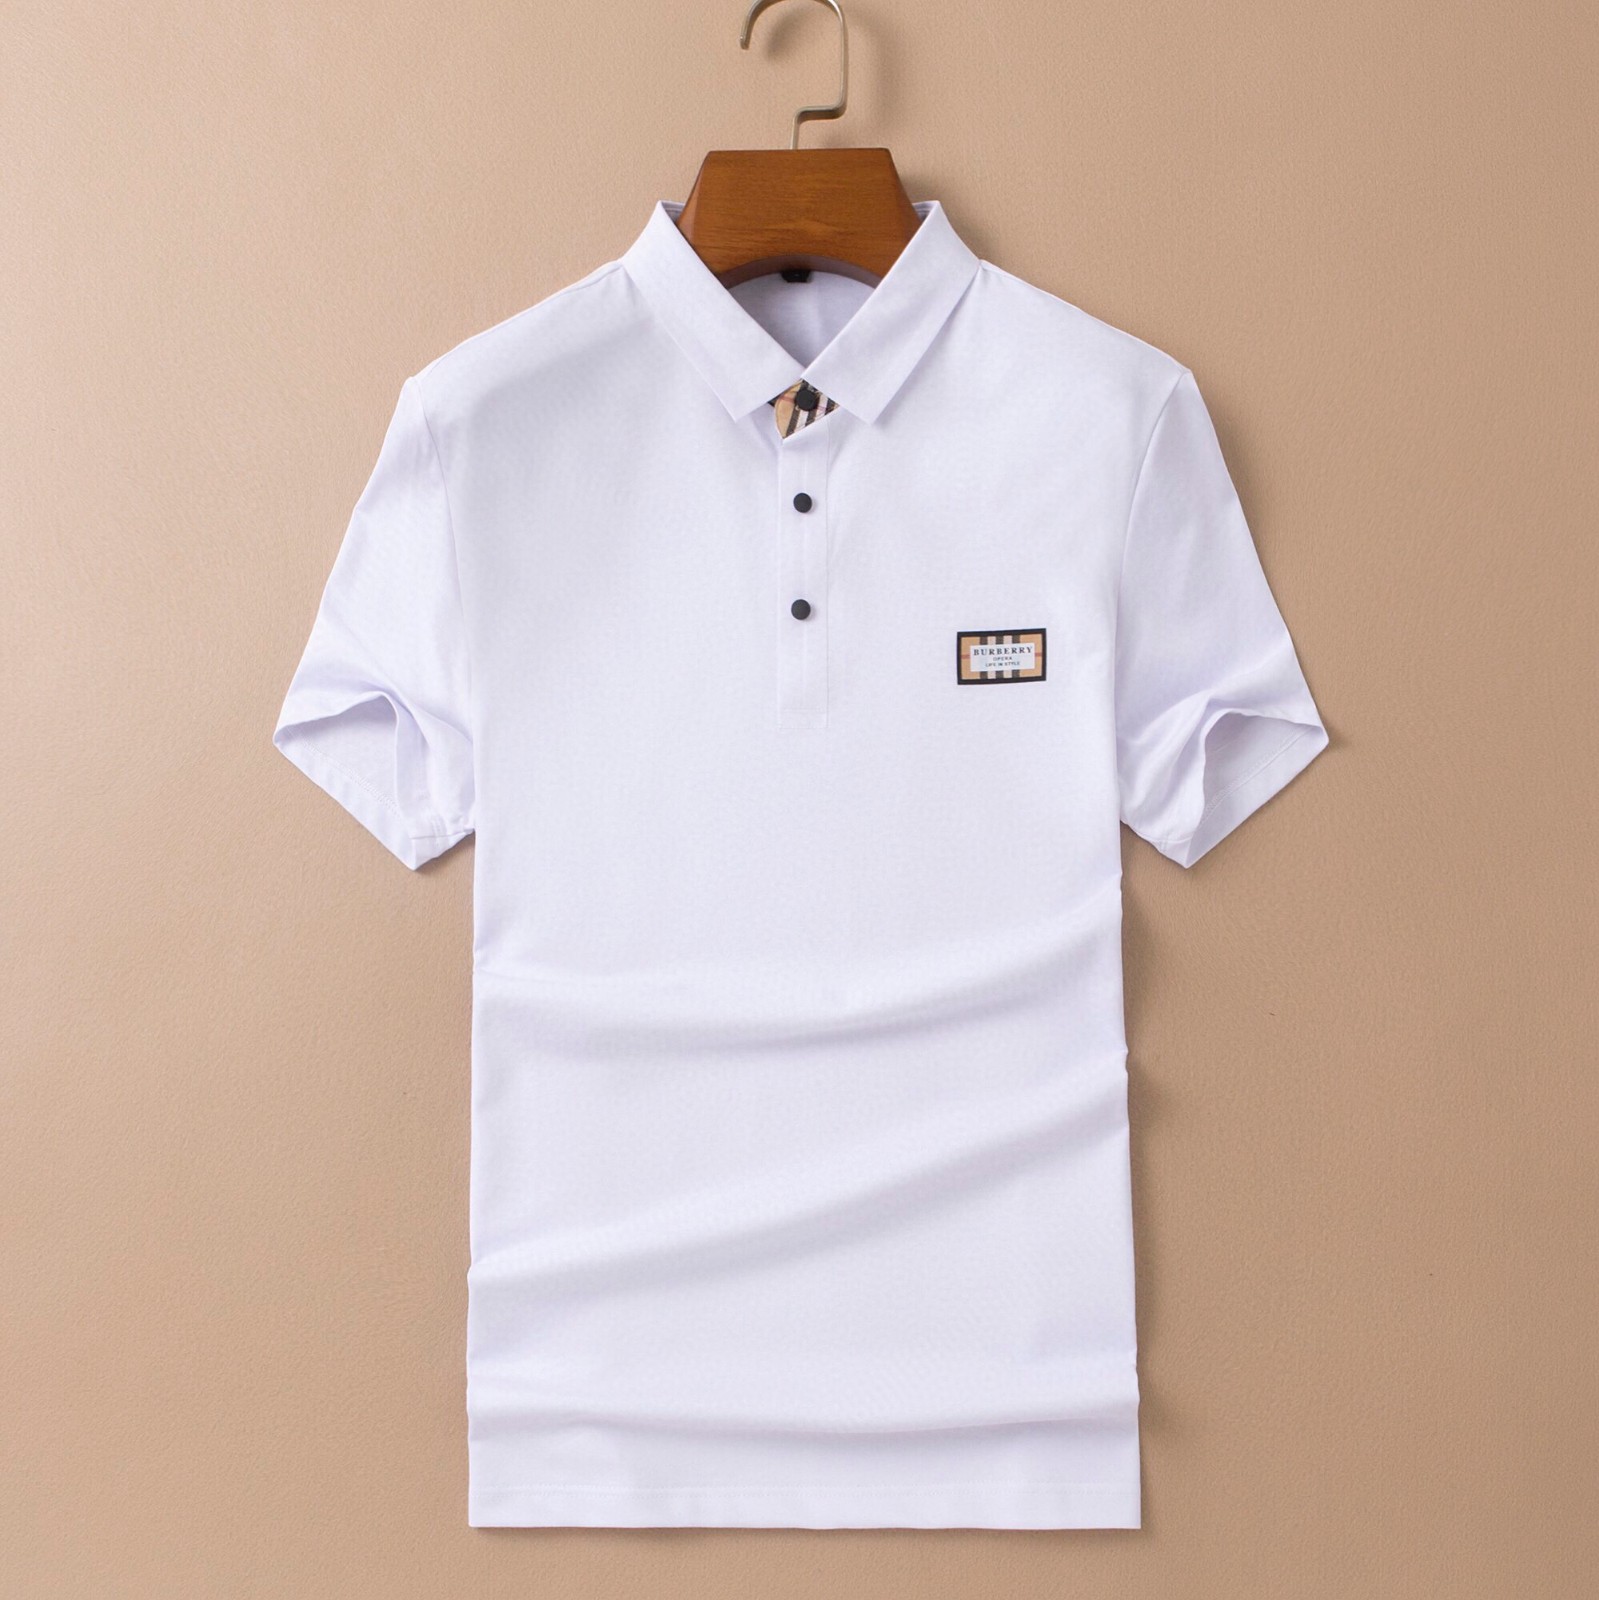 3色あり 柔らかい 着心地いい メンズ バーバリー 半袖tシャツ コピー カジュアル ビジネス トップス ポロシャツ